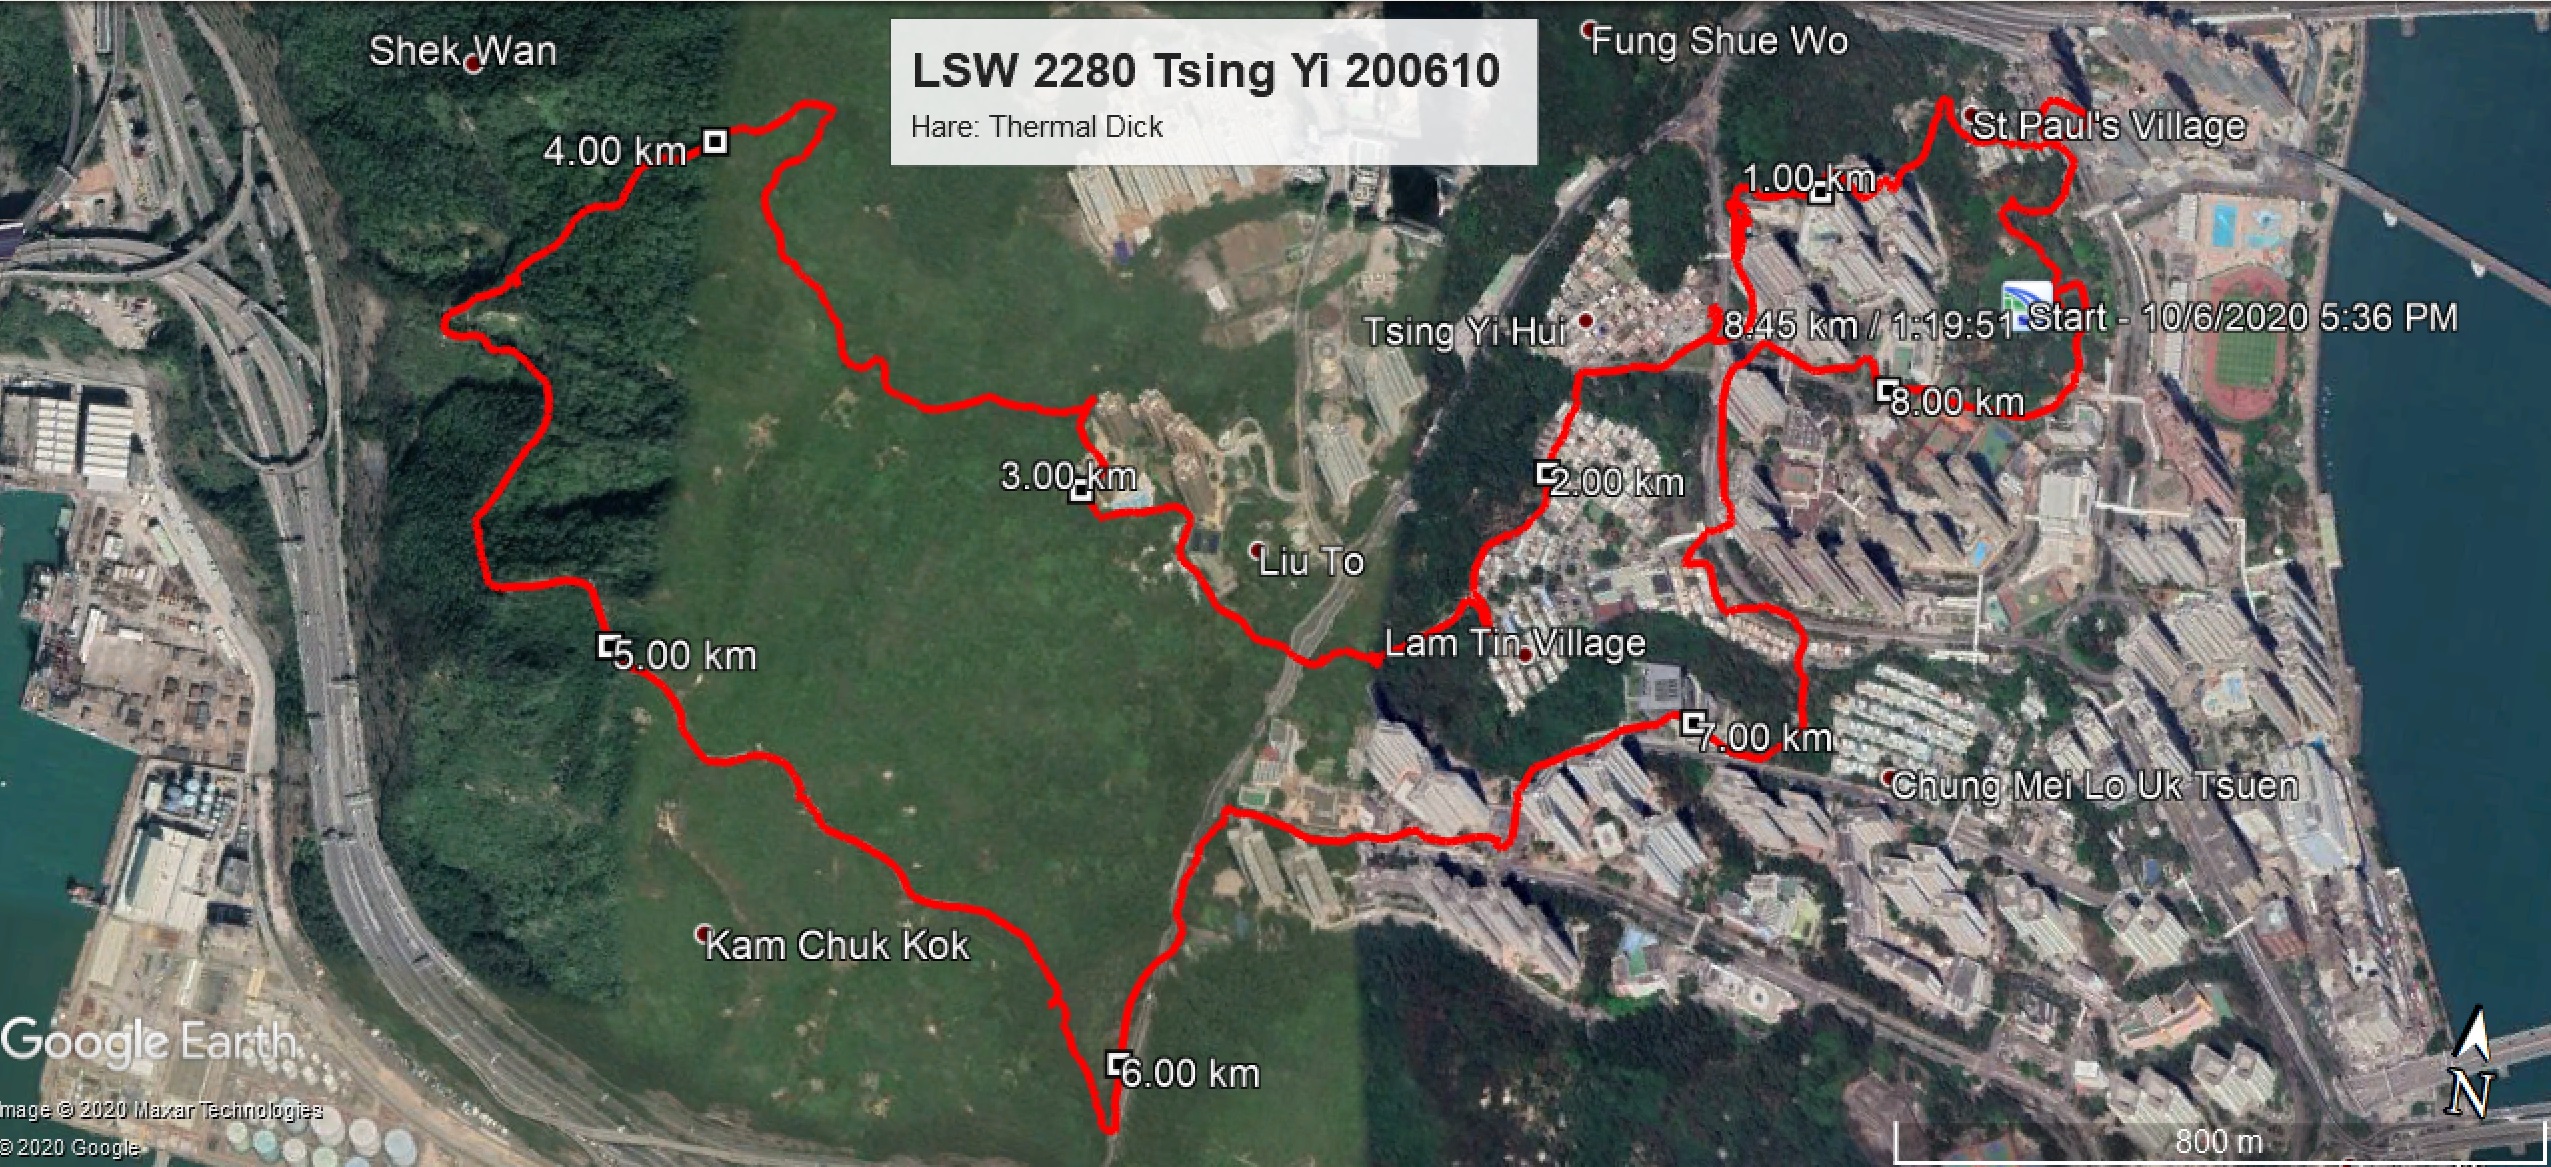 Tsing Yi 200610 8.45km 79mins